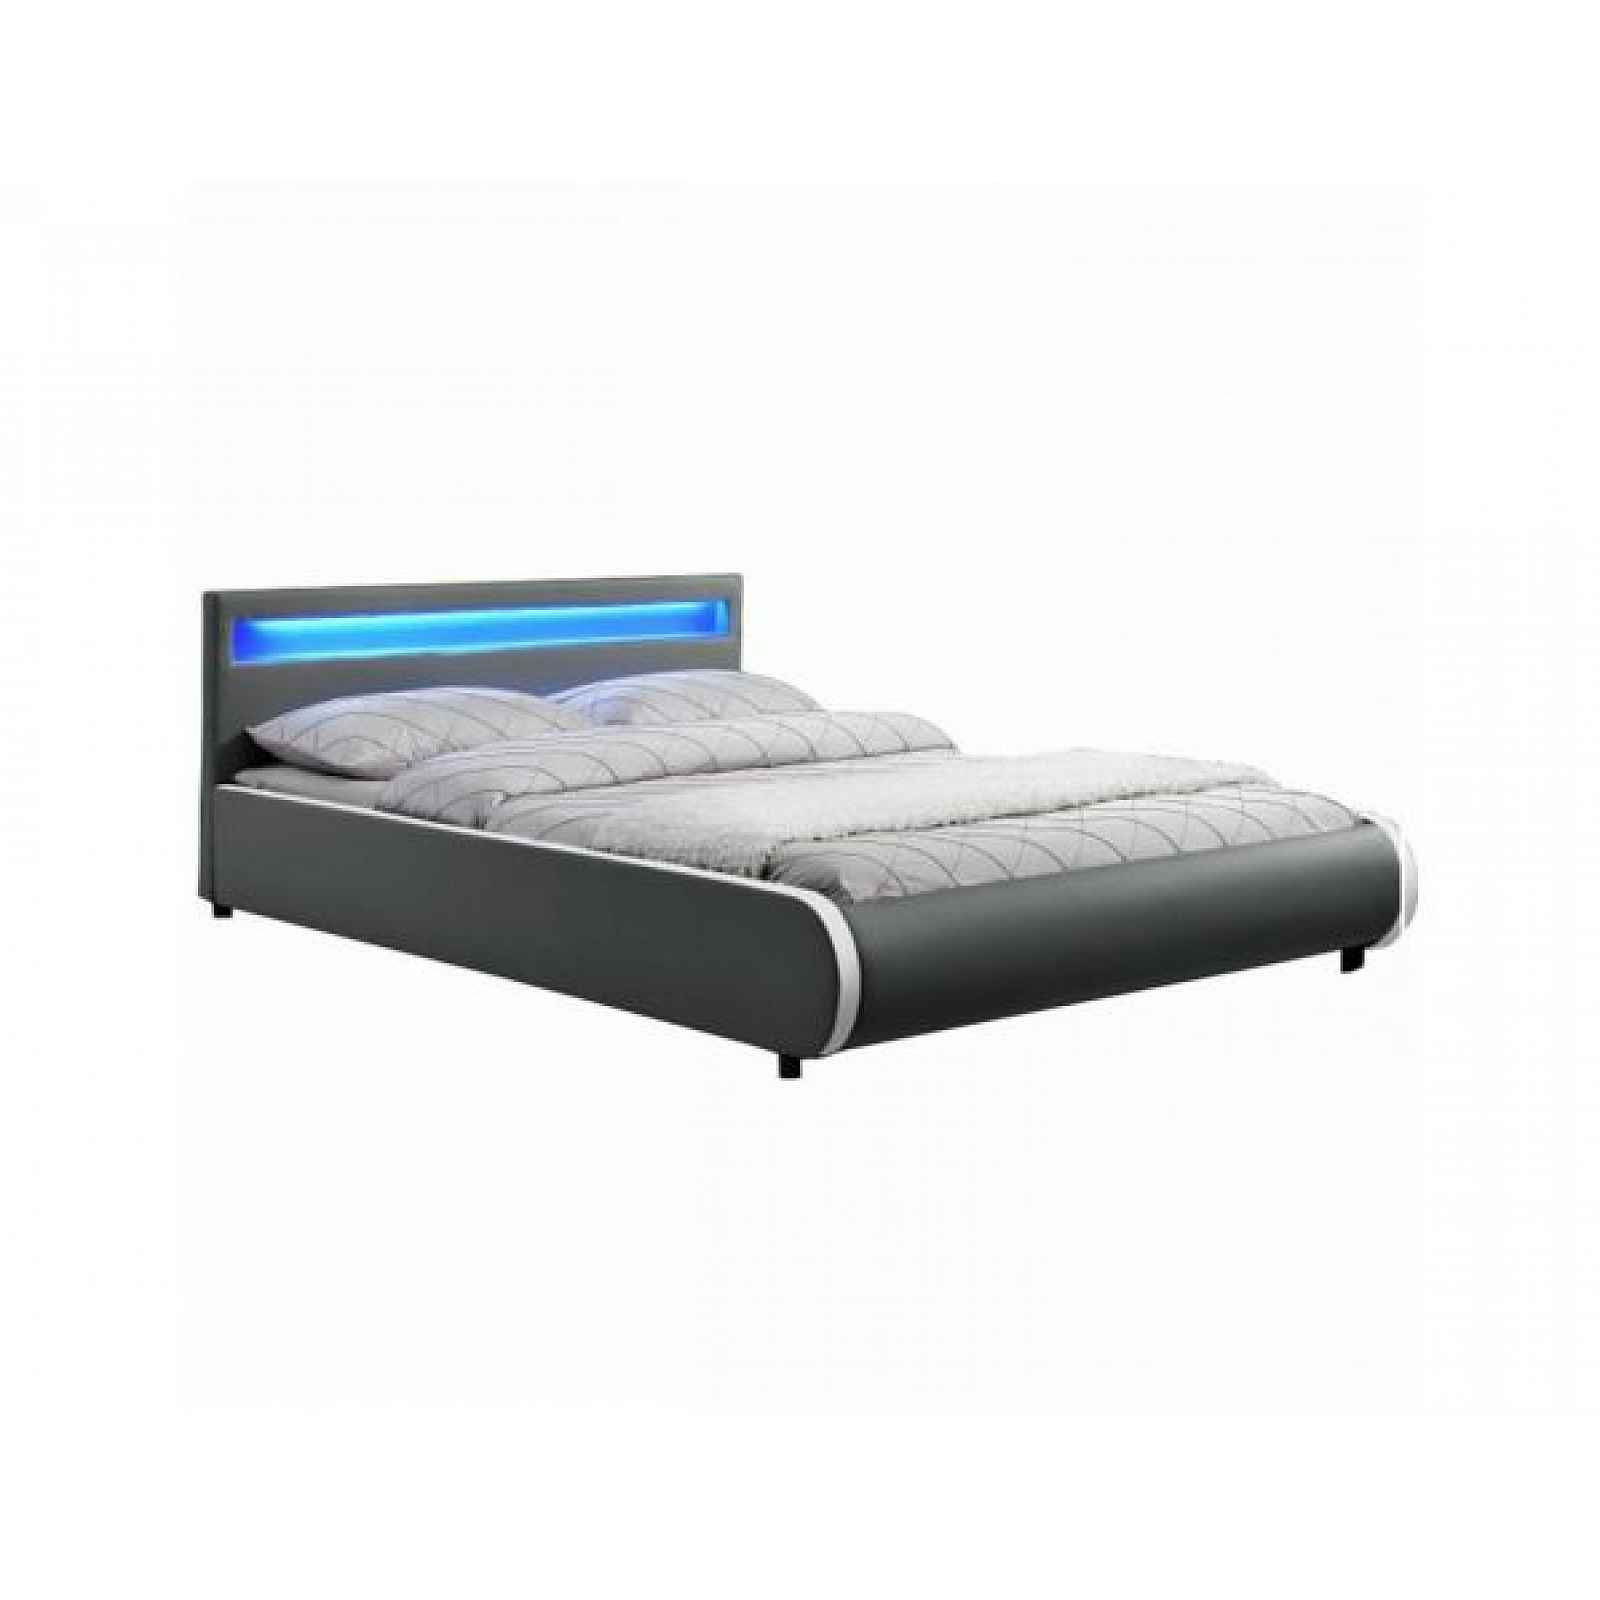 Manželská postel s RGB LED osvětlení DULCEA 180x200 cm, šedá ekokůže